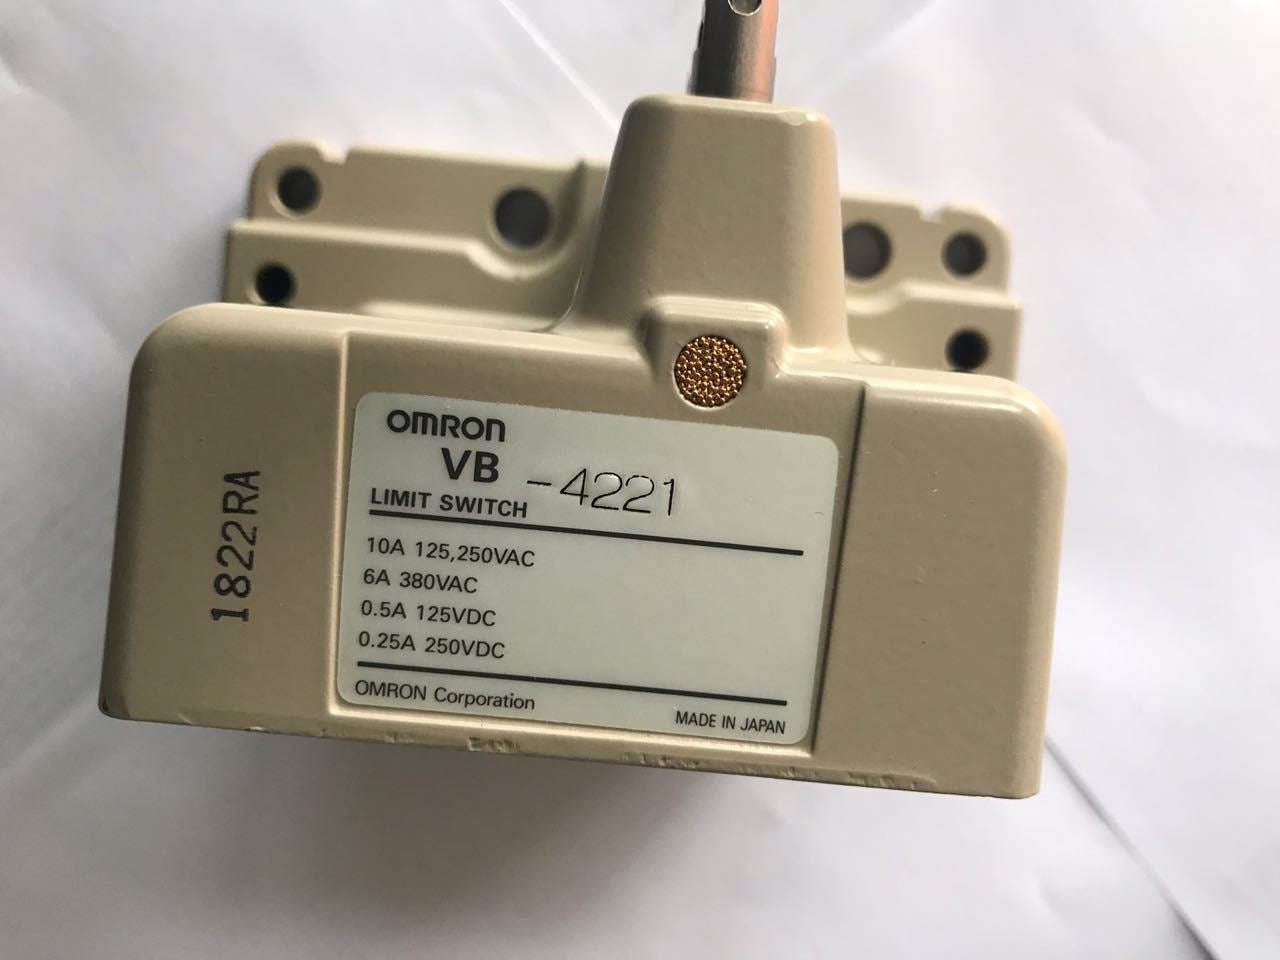 Limit switch Omron VB-4221